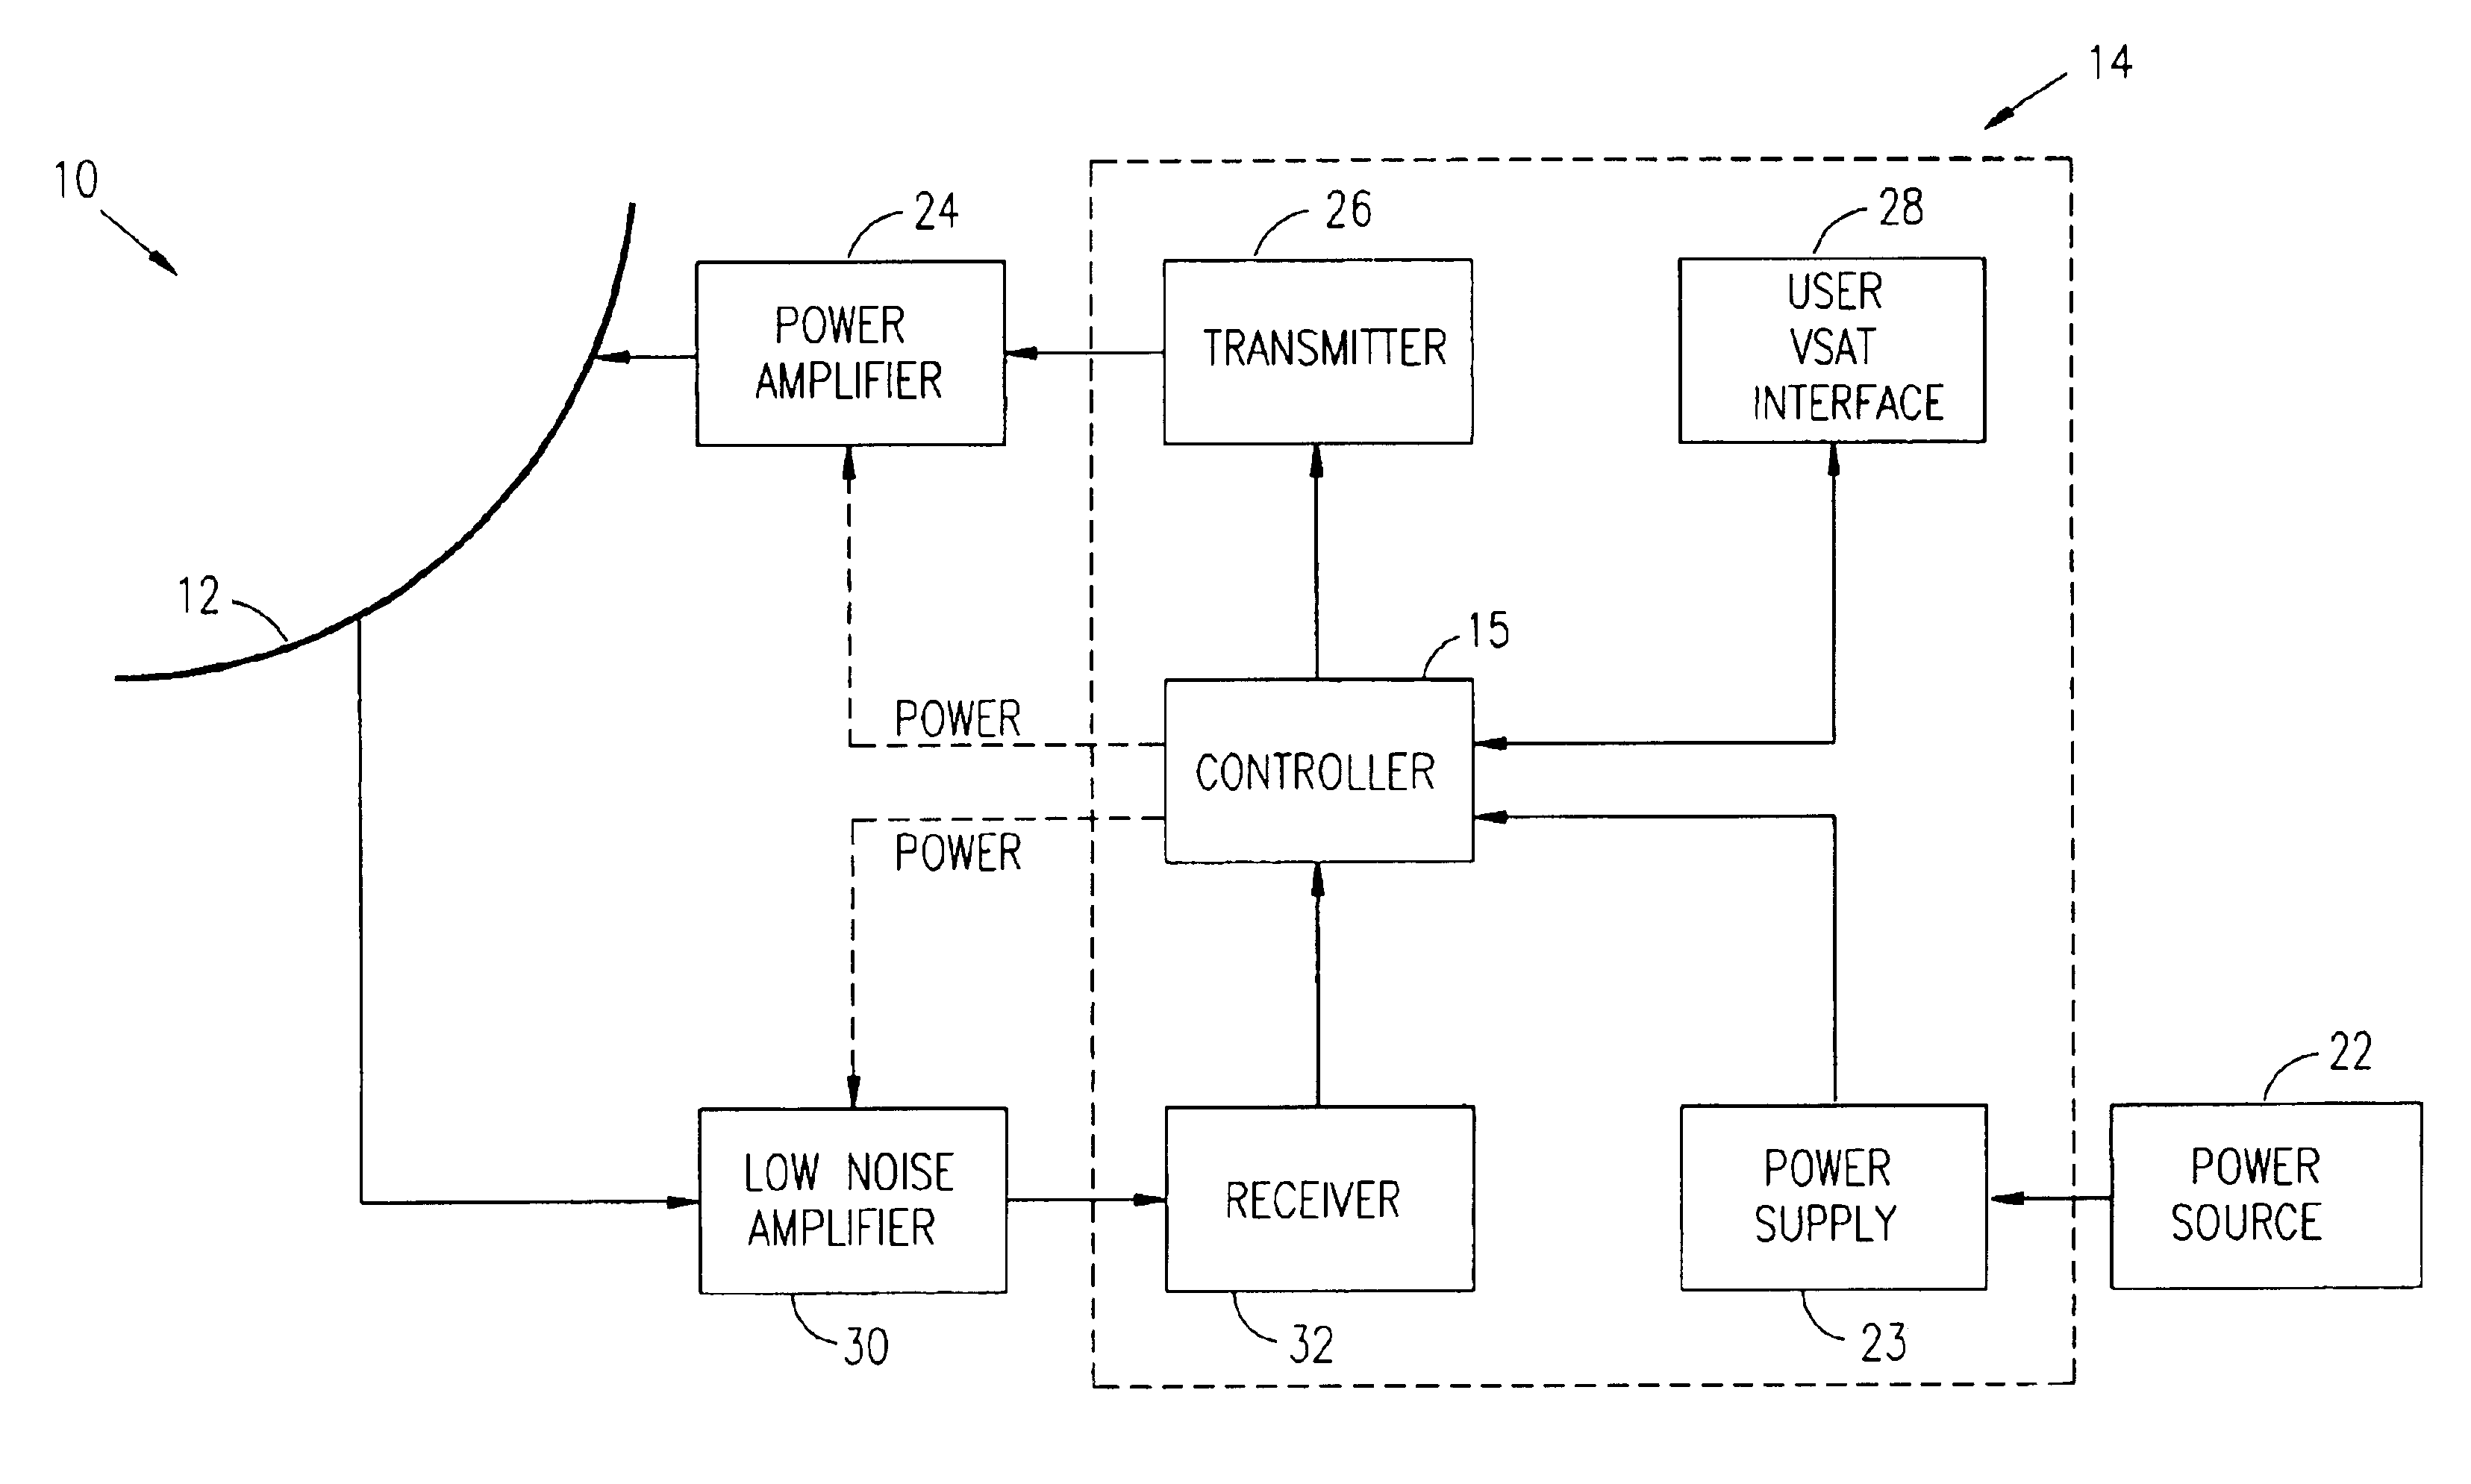 Switching VSAT transmitter